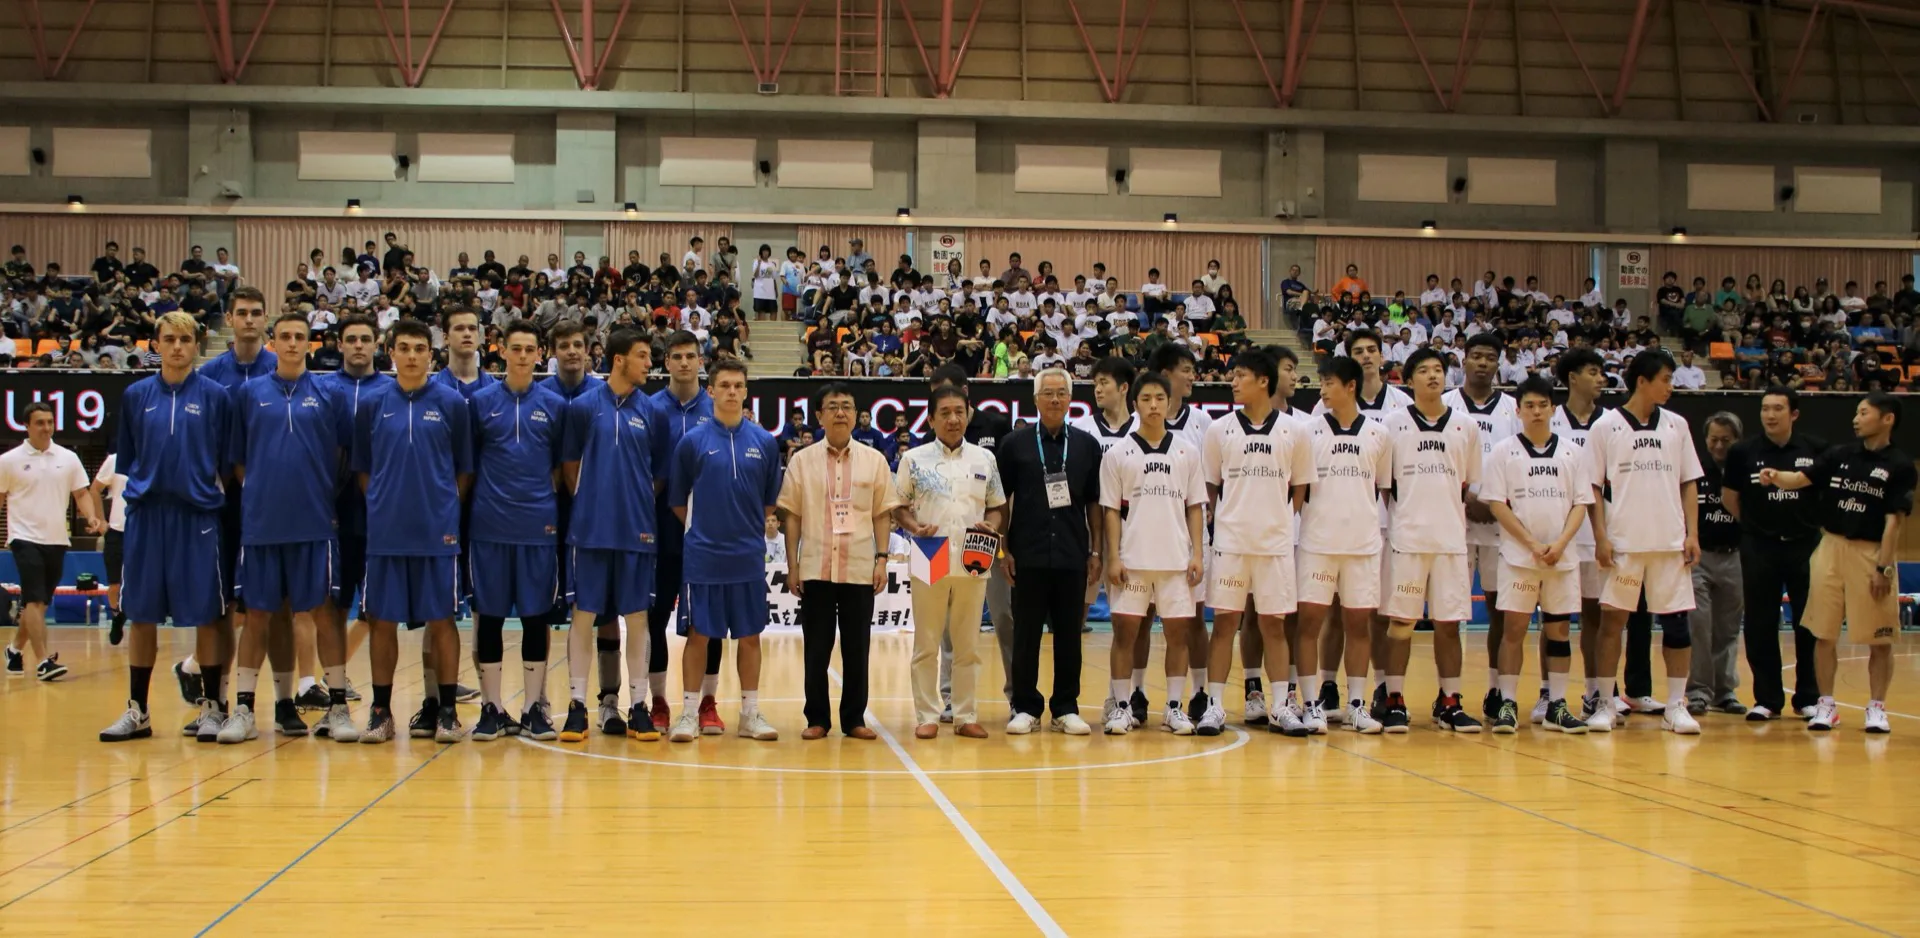 バスケ バスケットボール男子u 19公開練習試合 スポーツコミッション沖縄